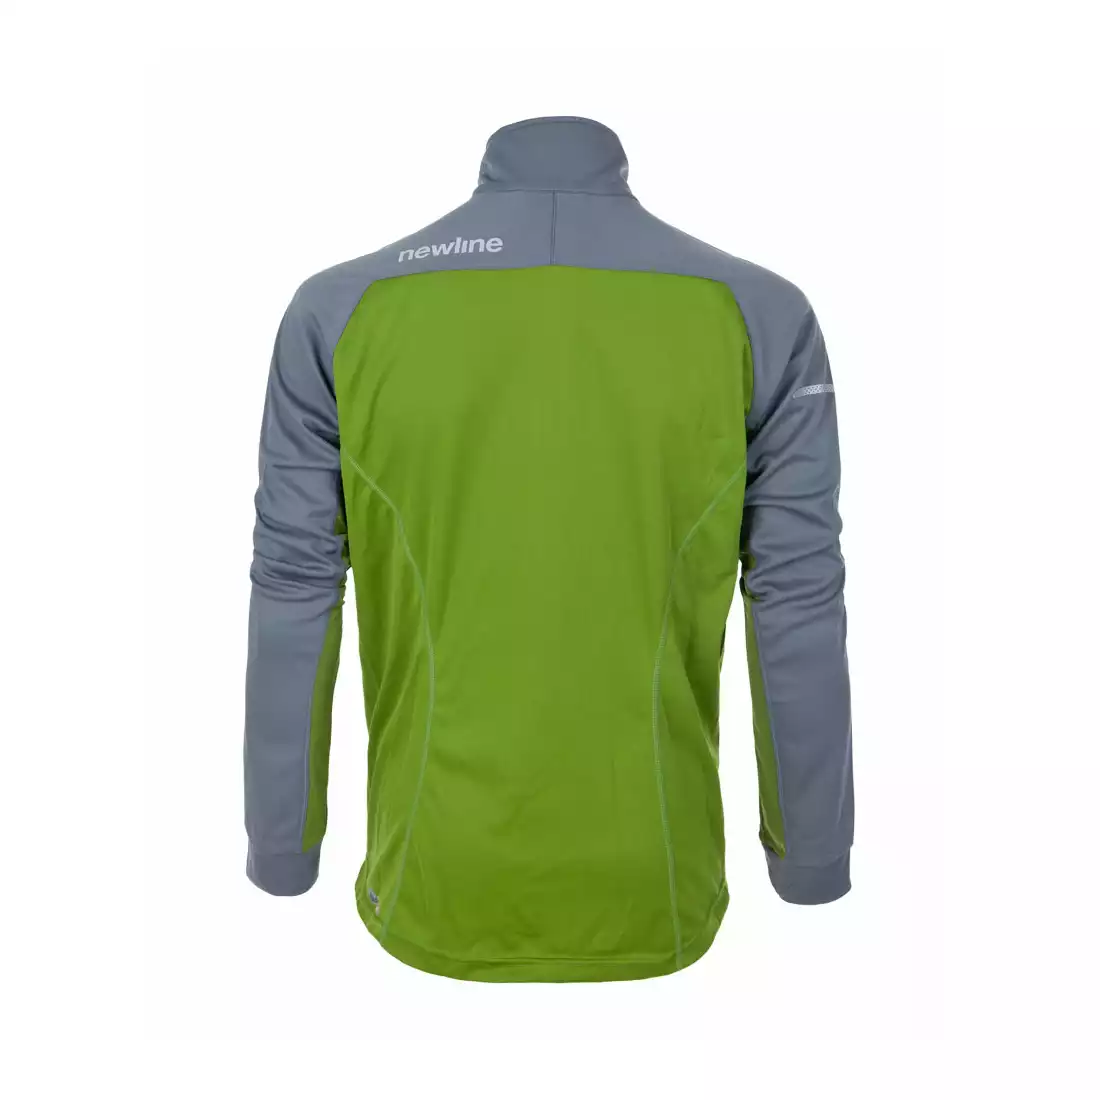 NEWLINE - męska bluza termoaktywna BASE WARM-UP ZIP - 14310-018, kolor: zielono-szary